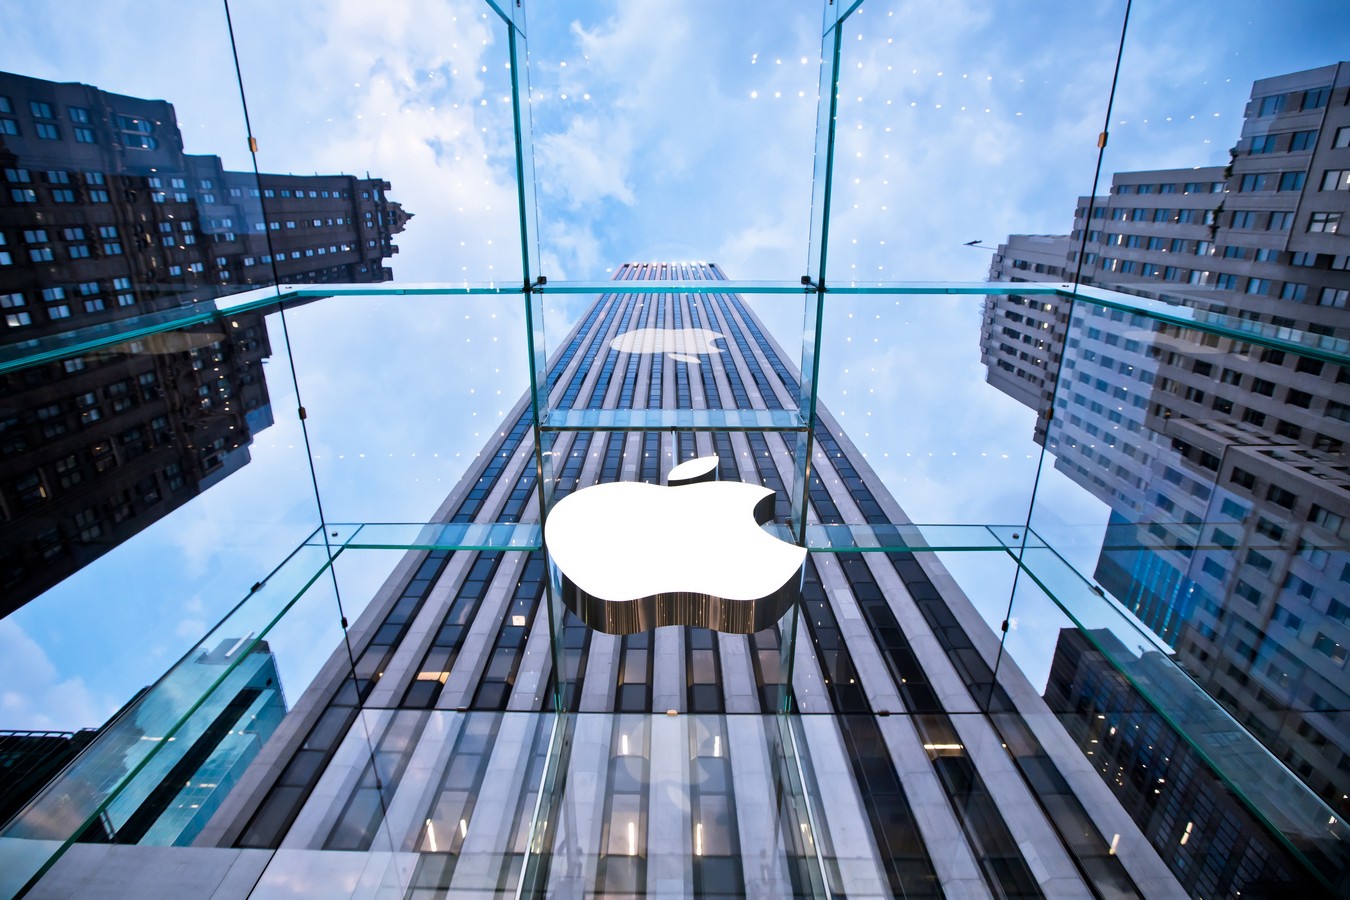 Los piratas de software piratean aplicaciones de iPhone para evitar la tienda de aplicaciones utilizando certificados digitales de Apple